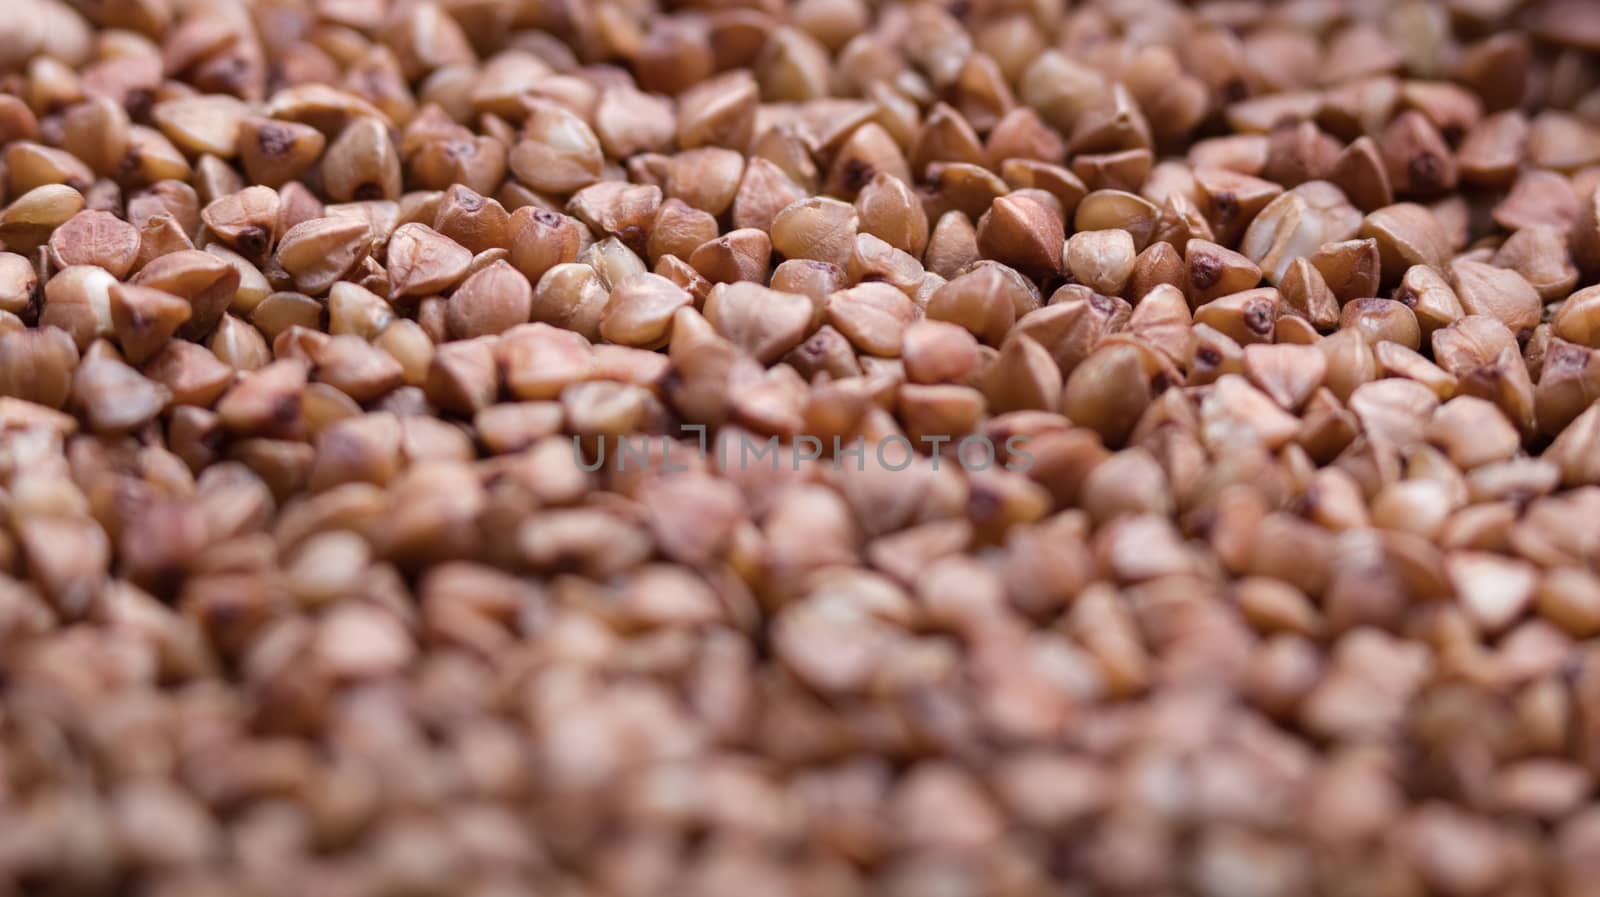 buckwheat groats. textured coating of grains. macro